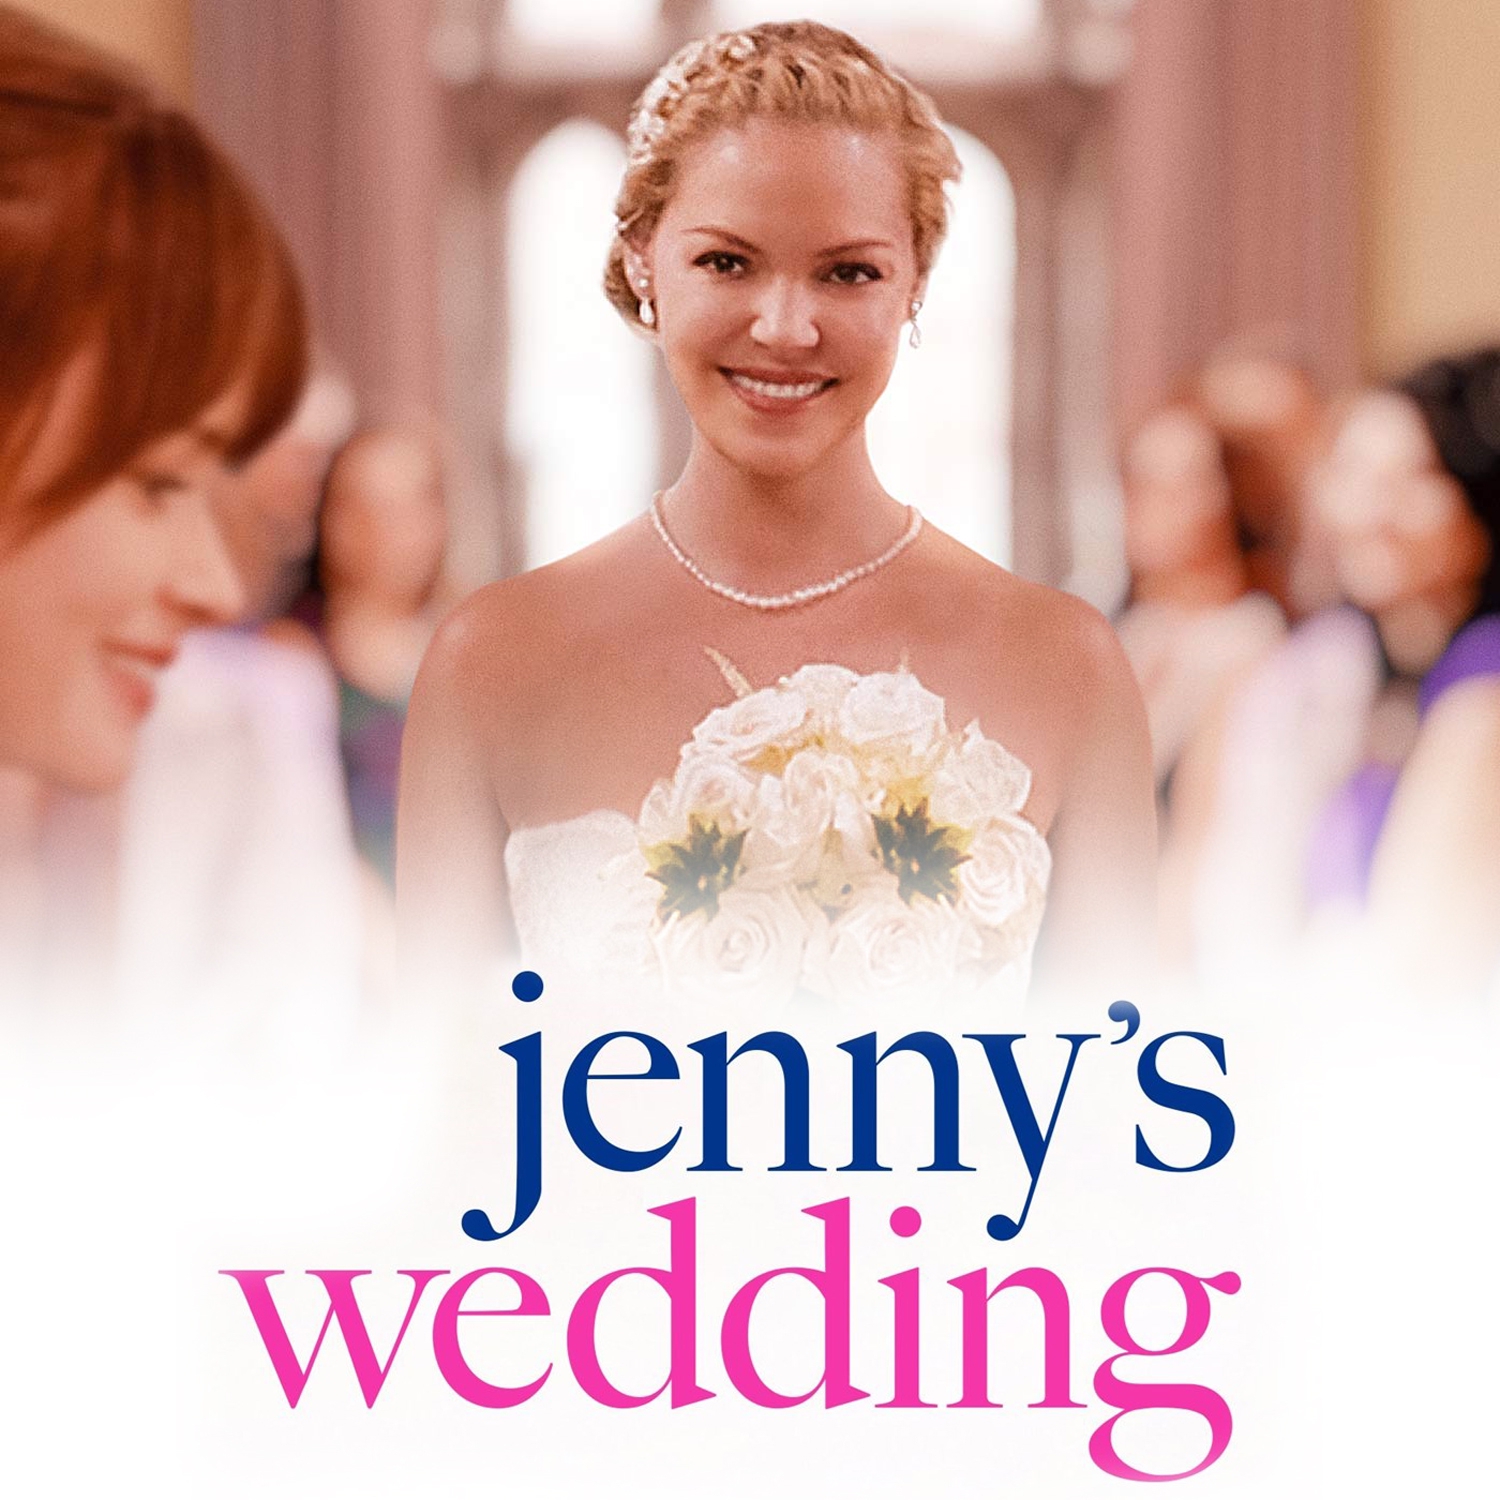 Le mariage de Jenny